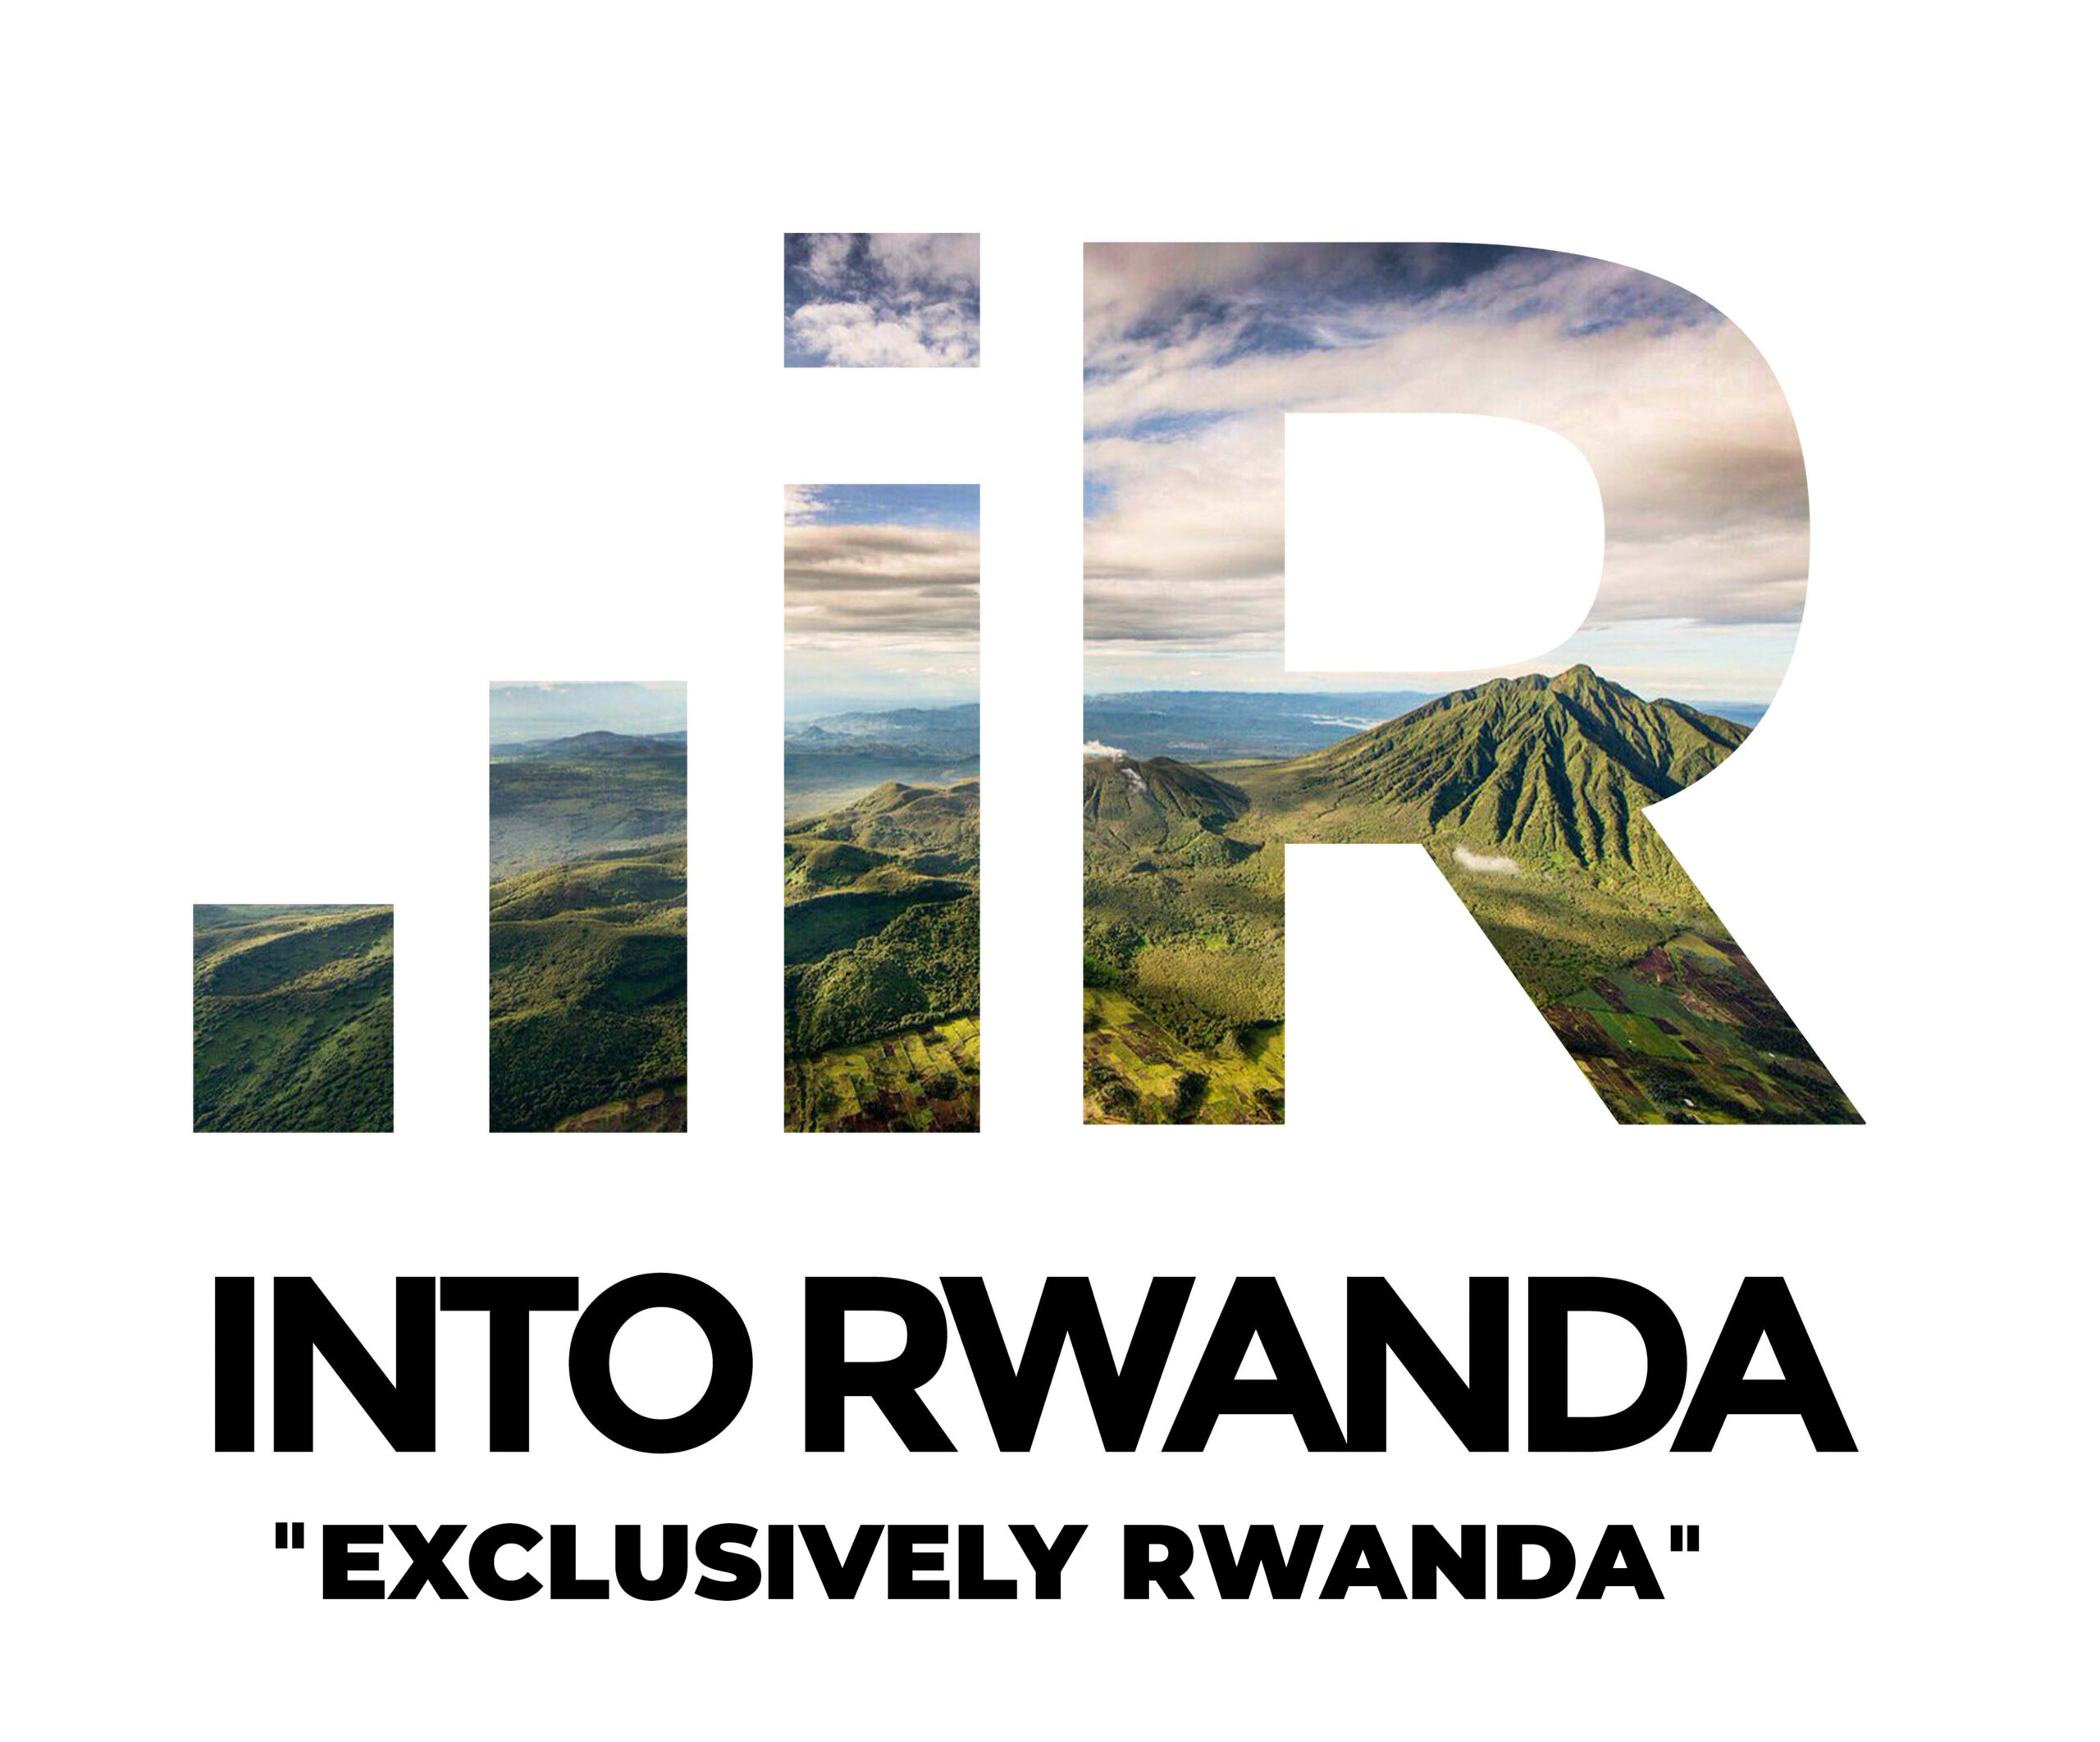 INTO RWANDA